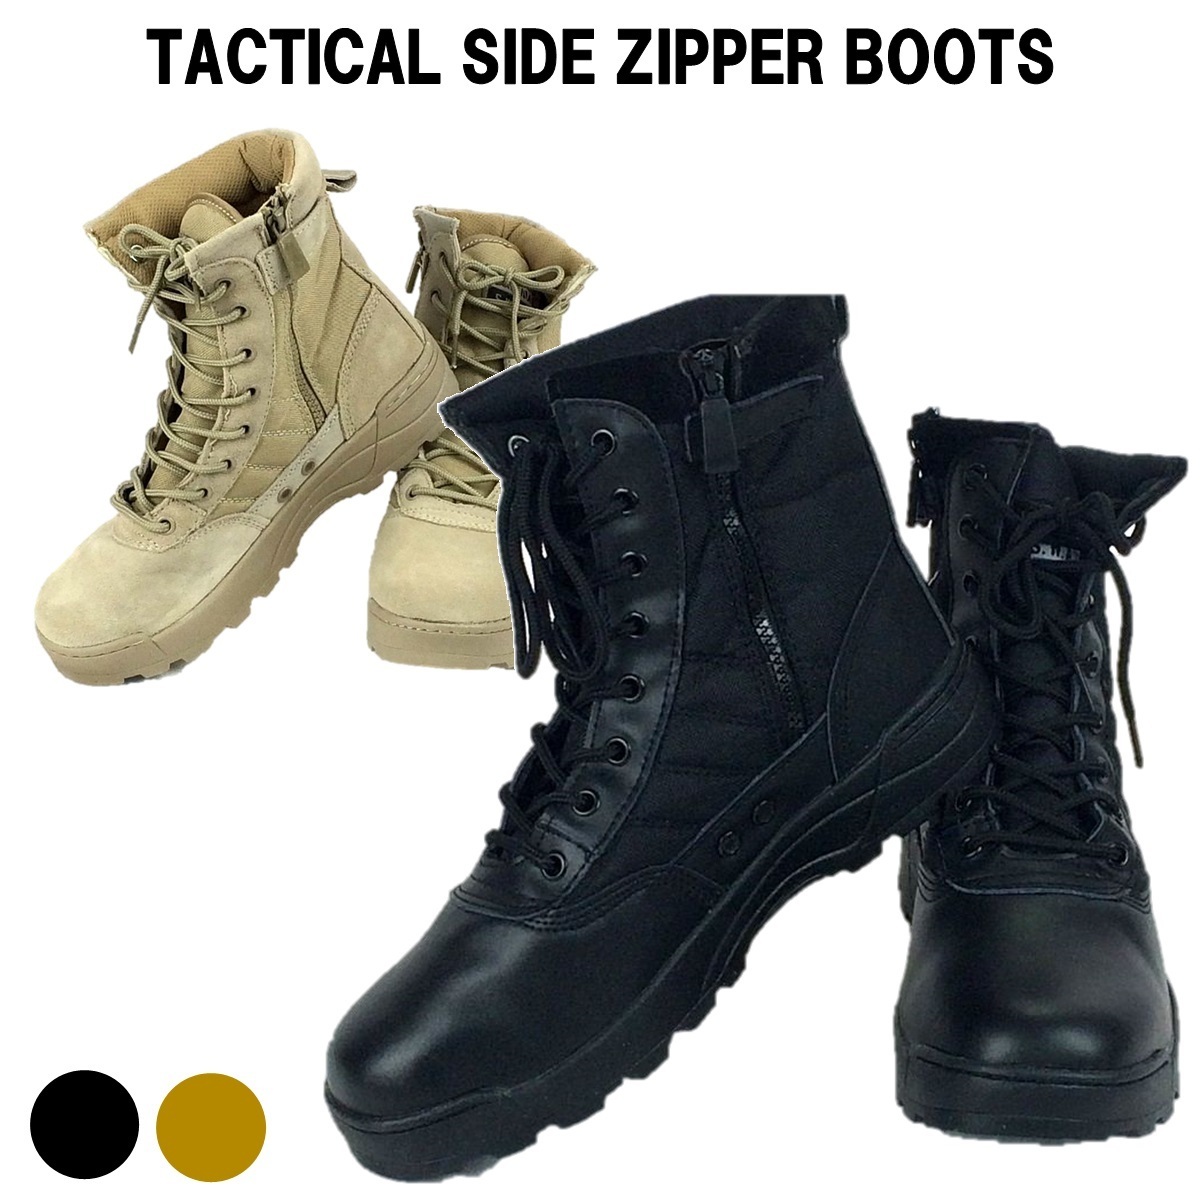  Tacty karu ботинки милитари ботинки combat ботинки rider ботинки рабочая обувь обувь боковой молния скумбиря ge мужской ботинки BK 26.5cm